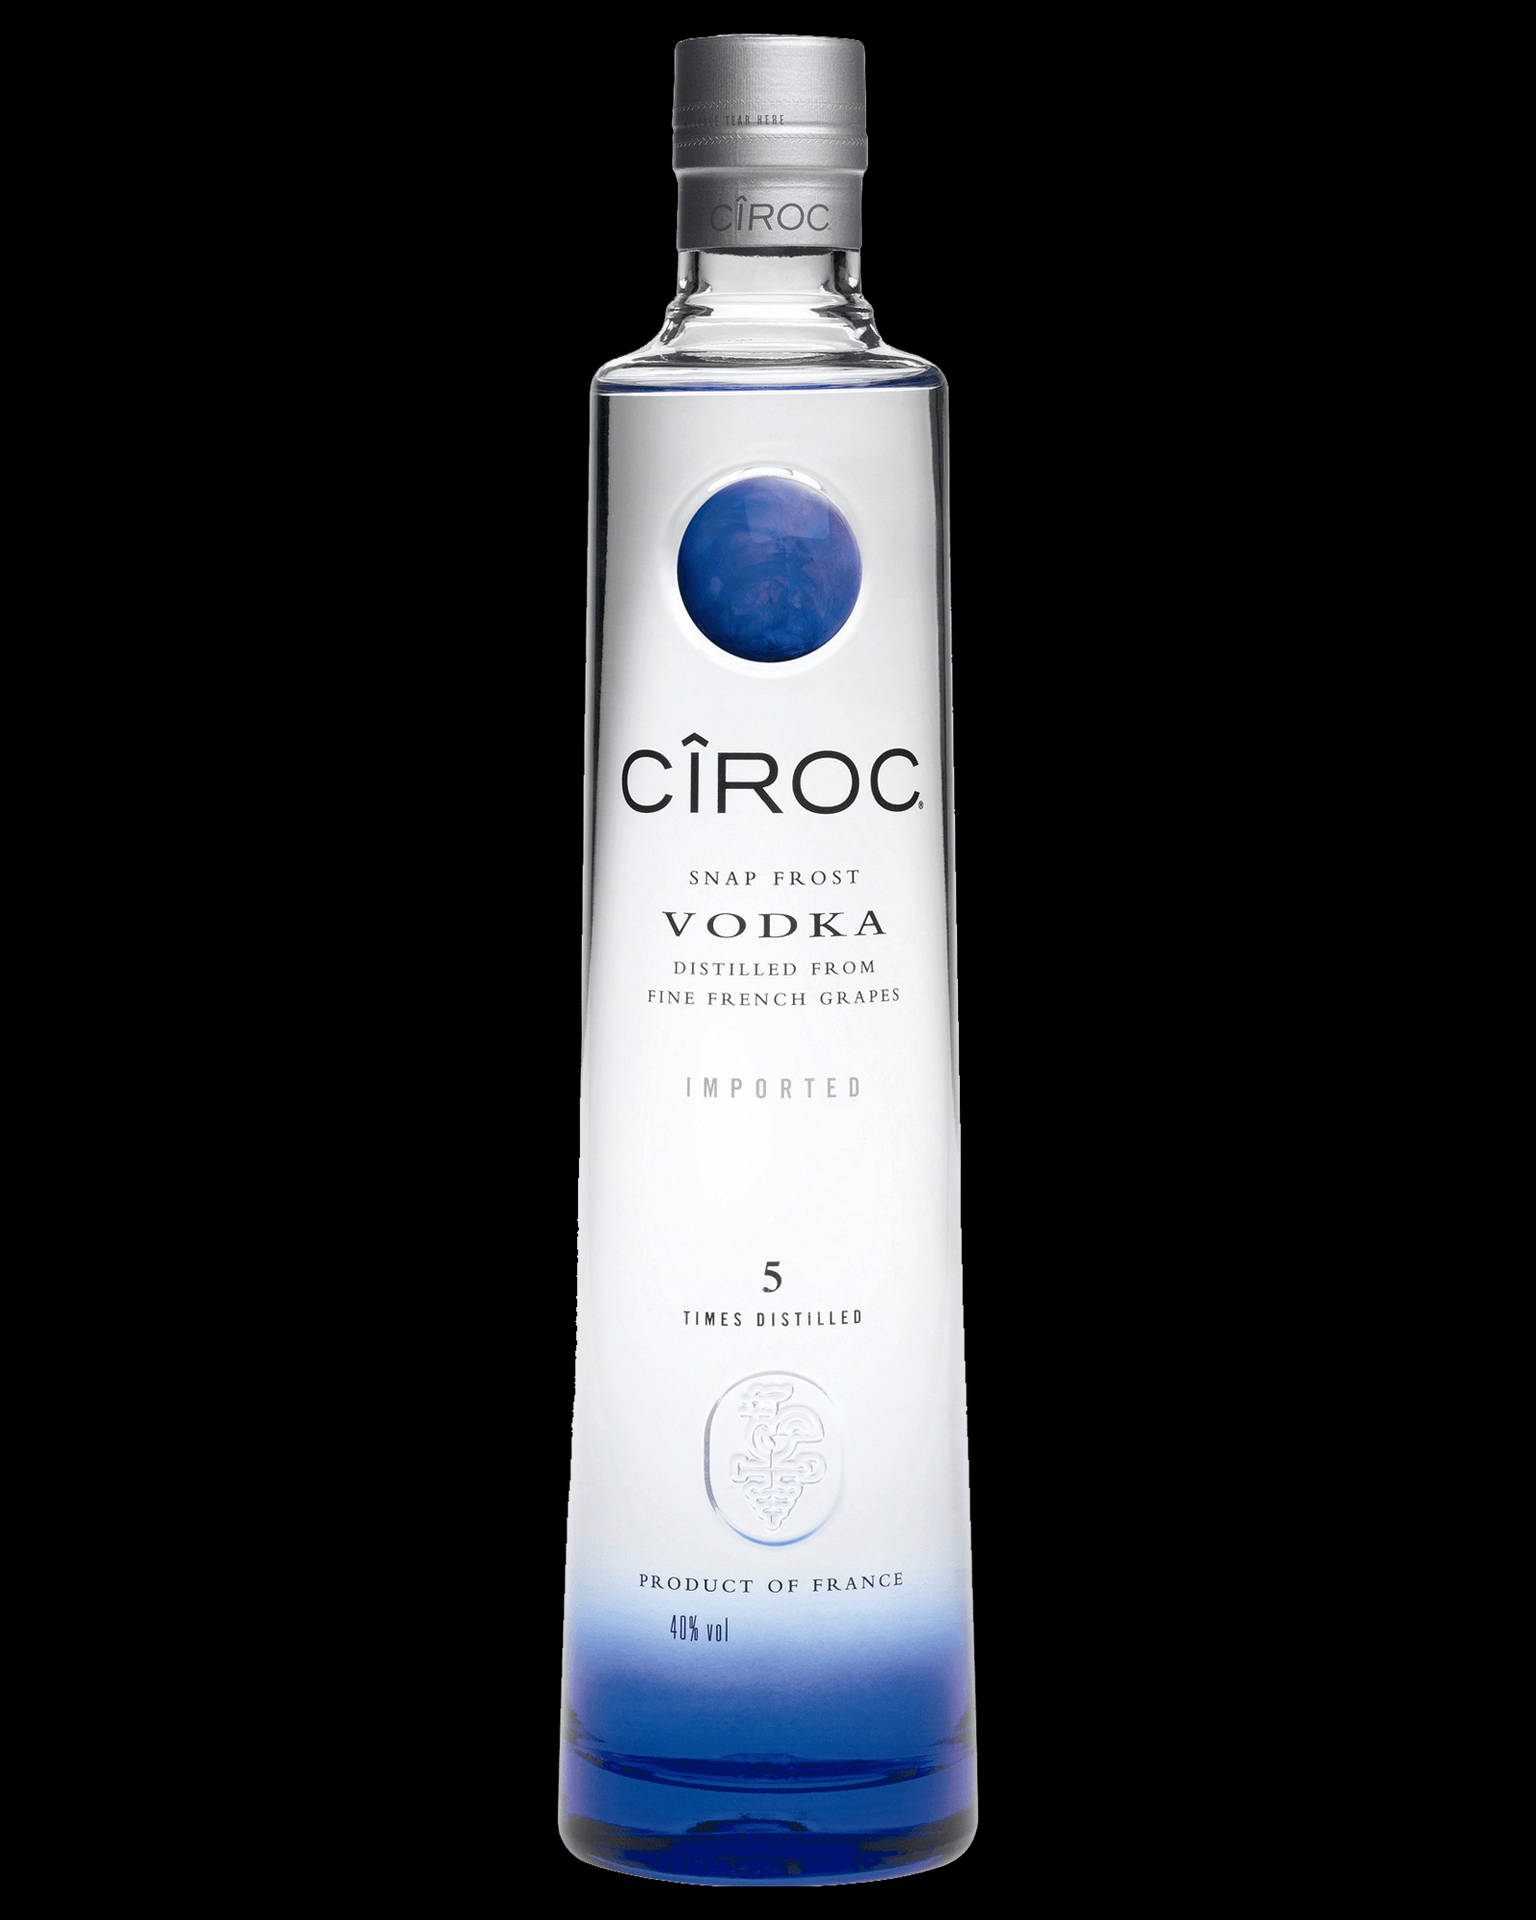 Cirocsnap Frost French Vodka Bottle - Ciroc Snap Frost Fransk Vodkaförsäljning Wallpaper